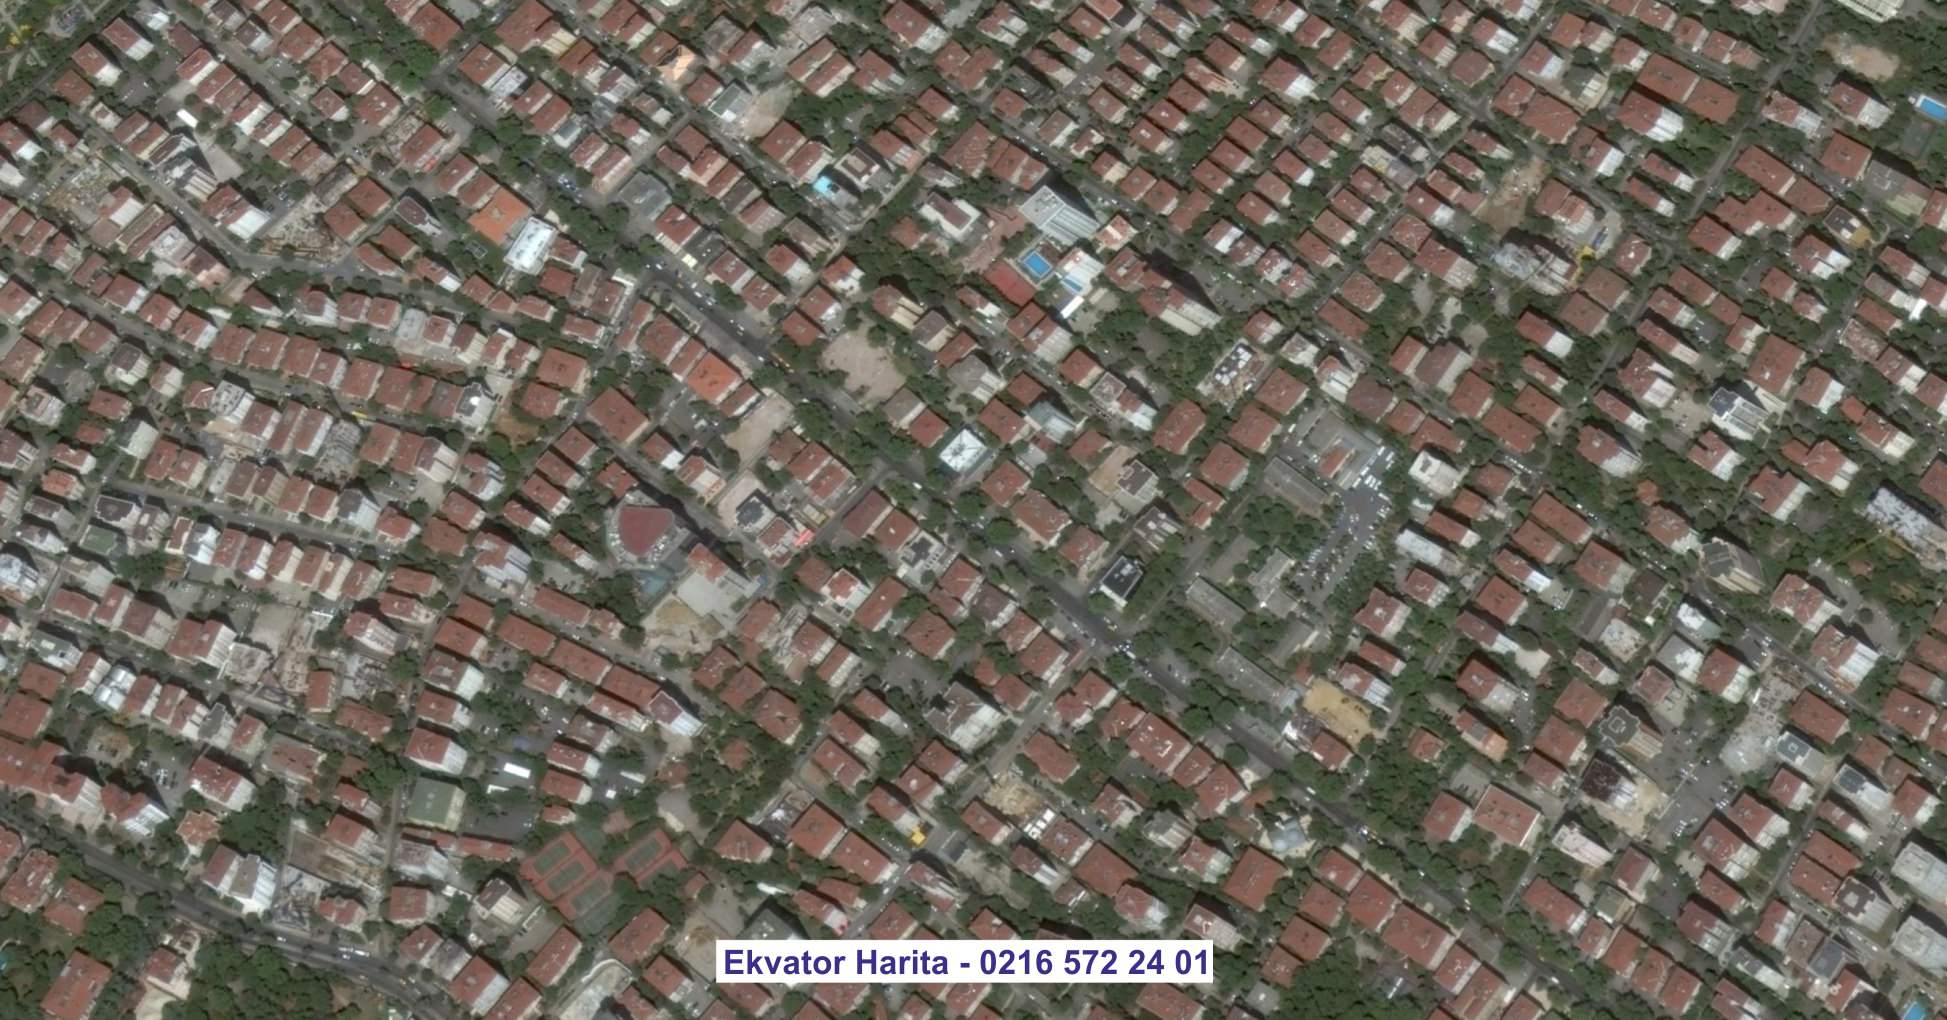 Ağrı Uydu Görüntüsü Örnek Fotoğrafı